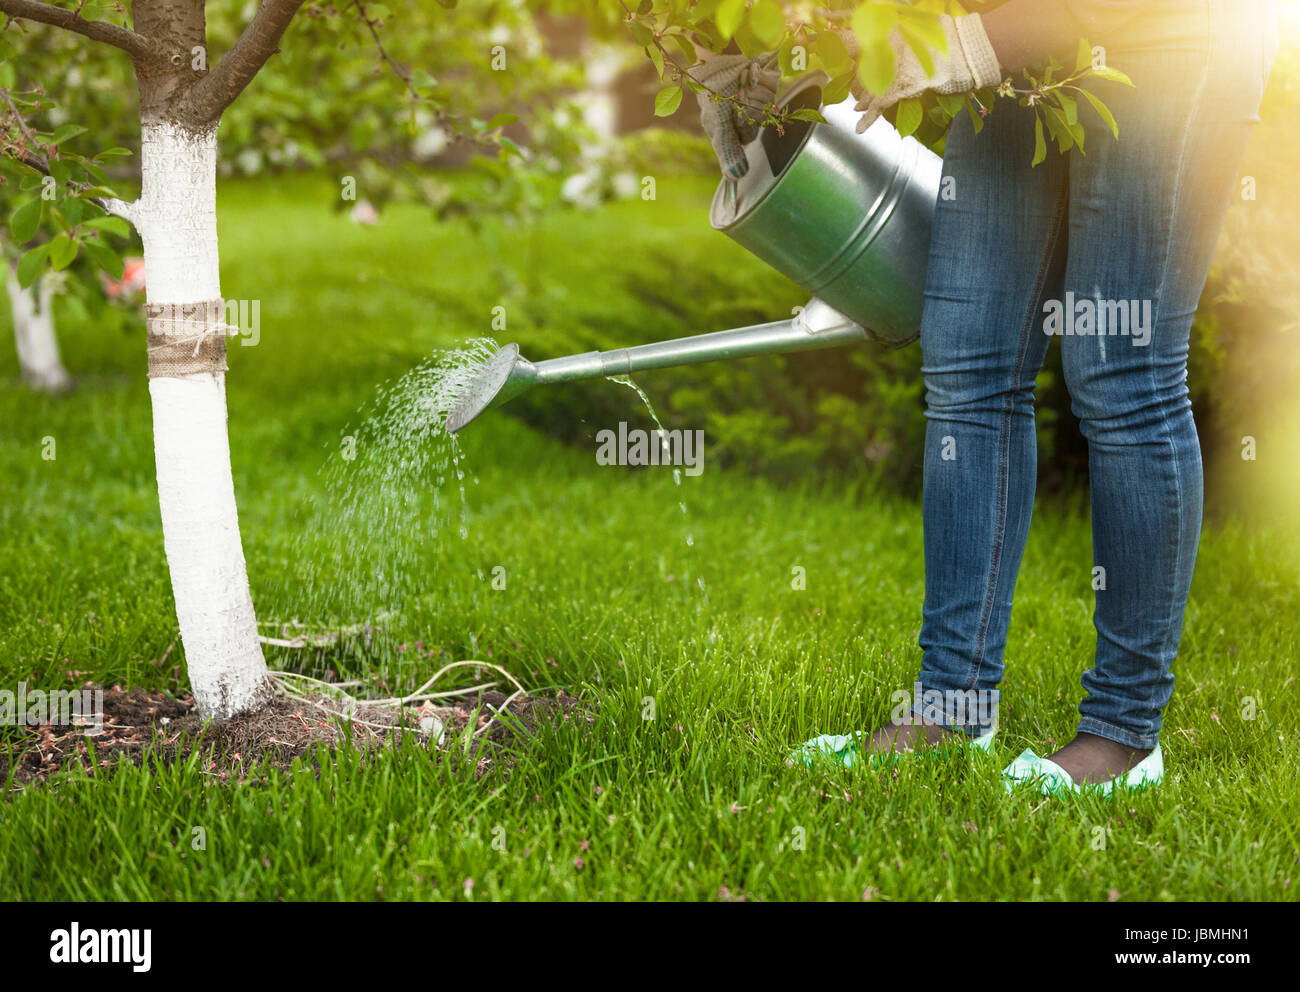 Во время цветения плодовых деревьев можно поливать. Полив черешни. Полив дерева с ведра. Полив яблоневого сада. Полив деревьев летом.